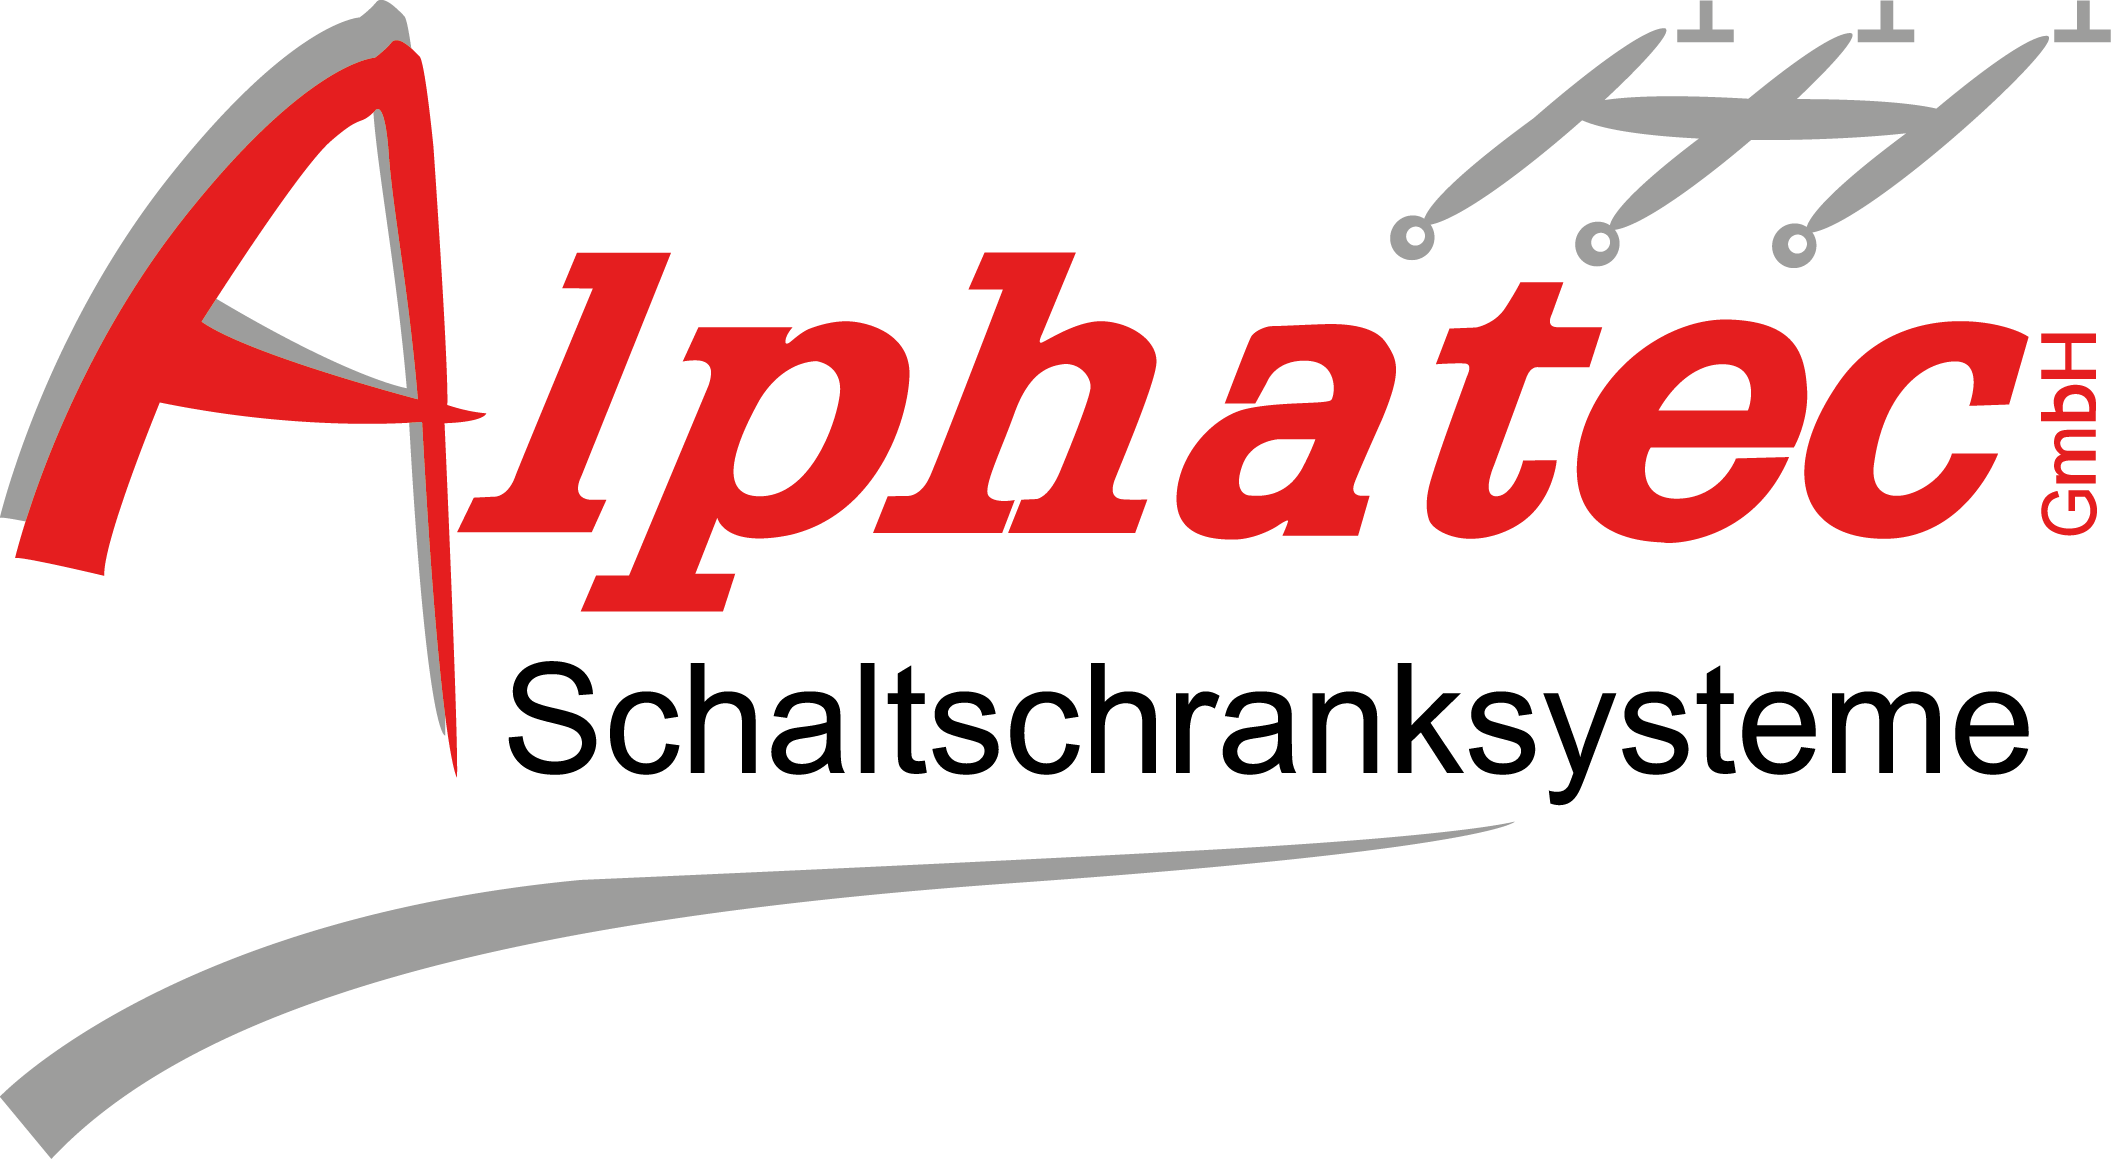 Produkte von Alphatec in Hopf Online Shop kaufen